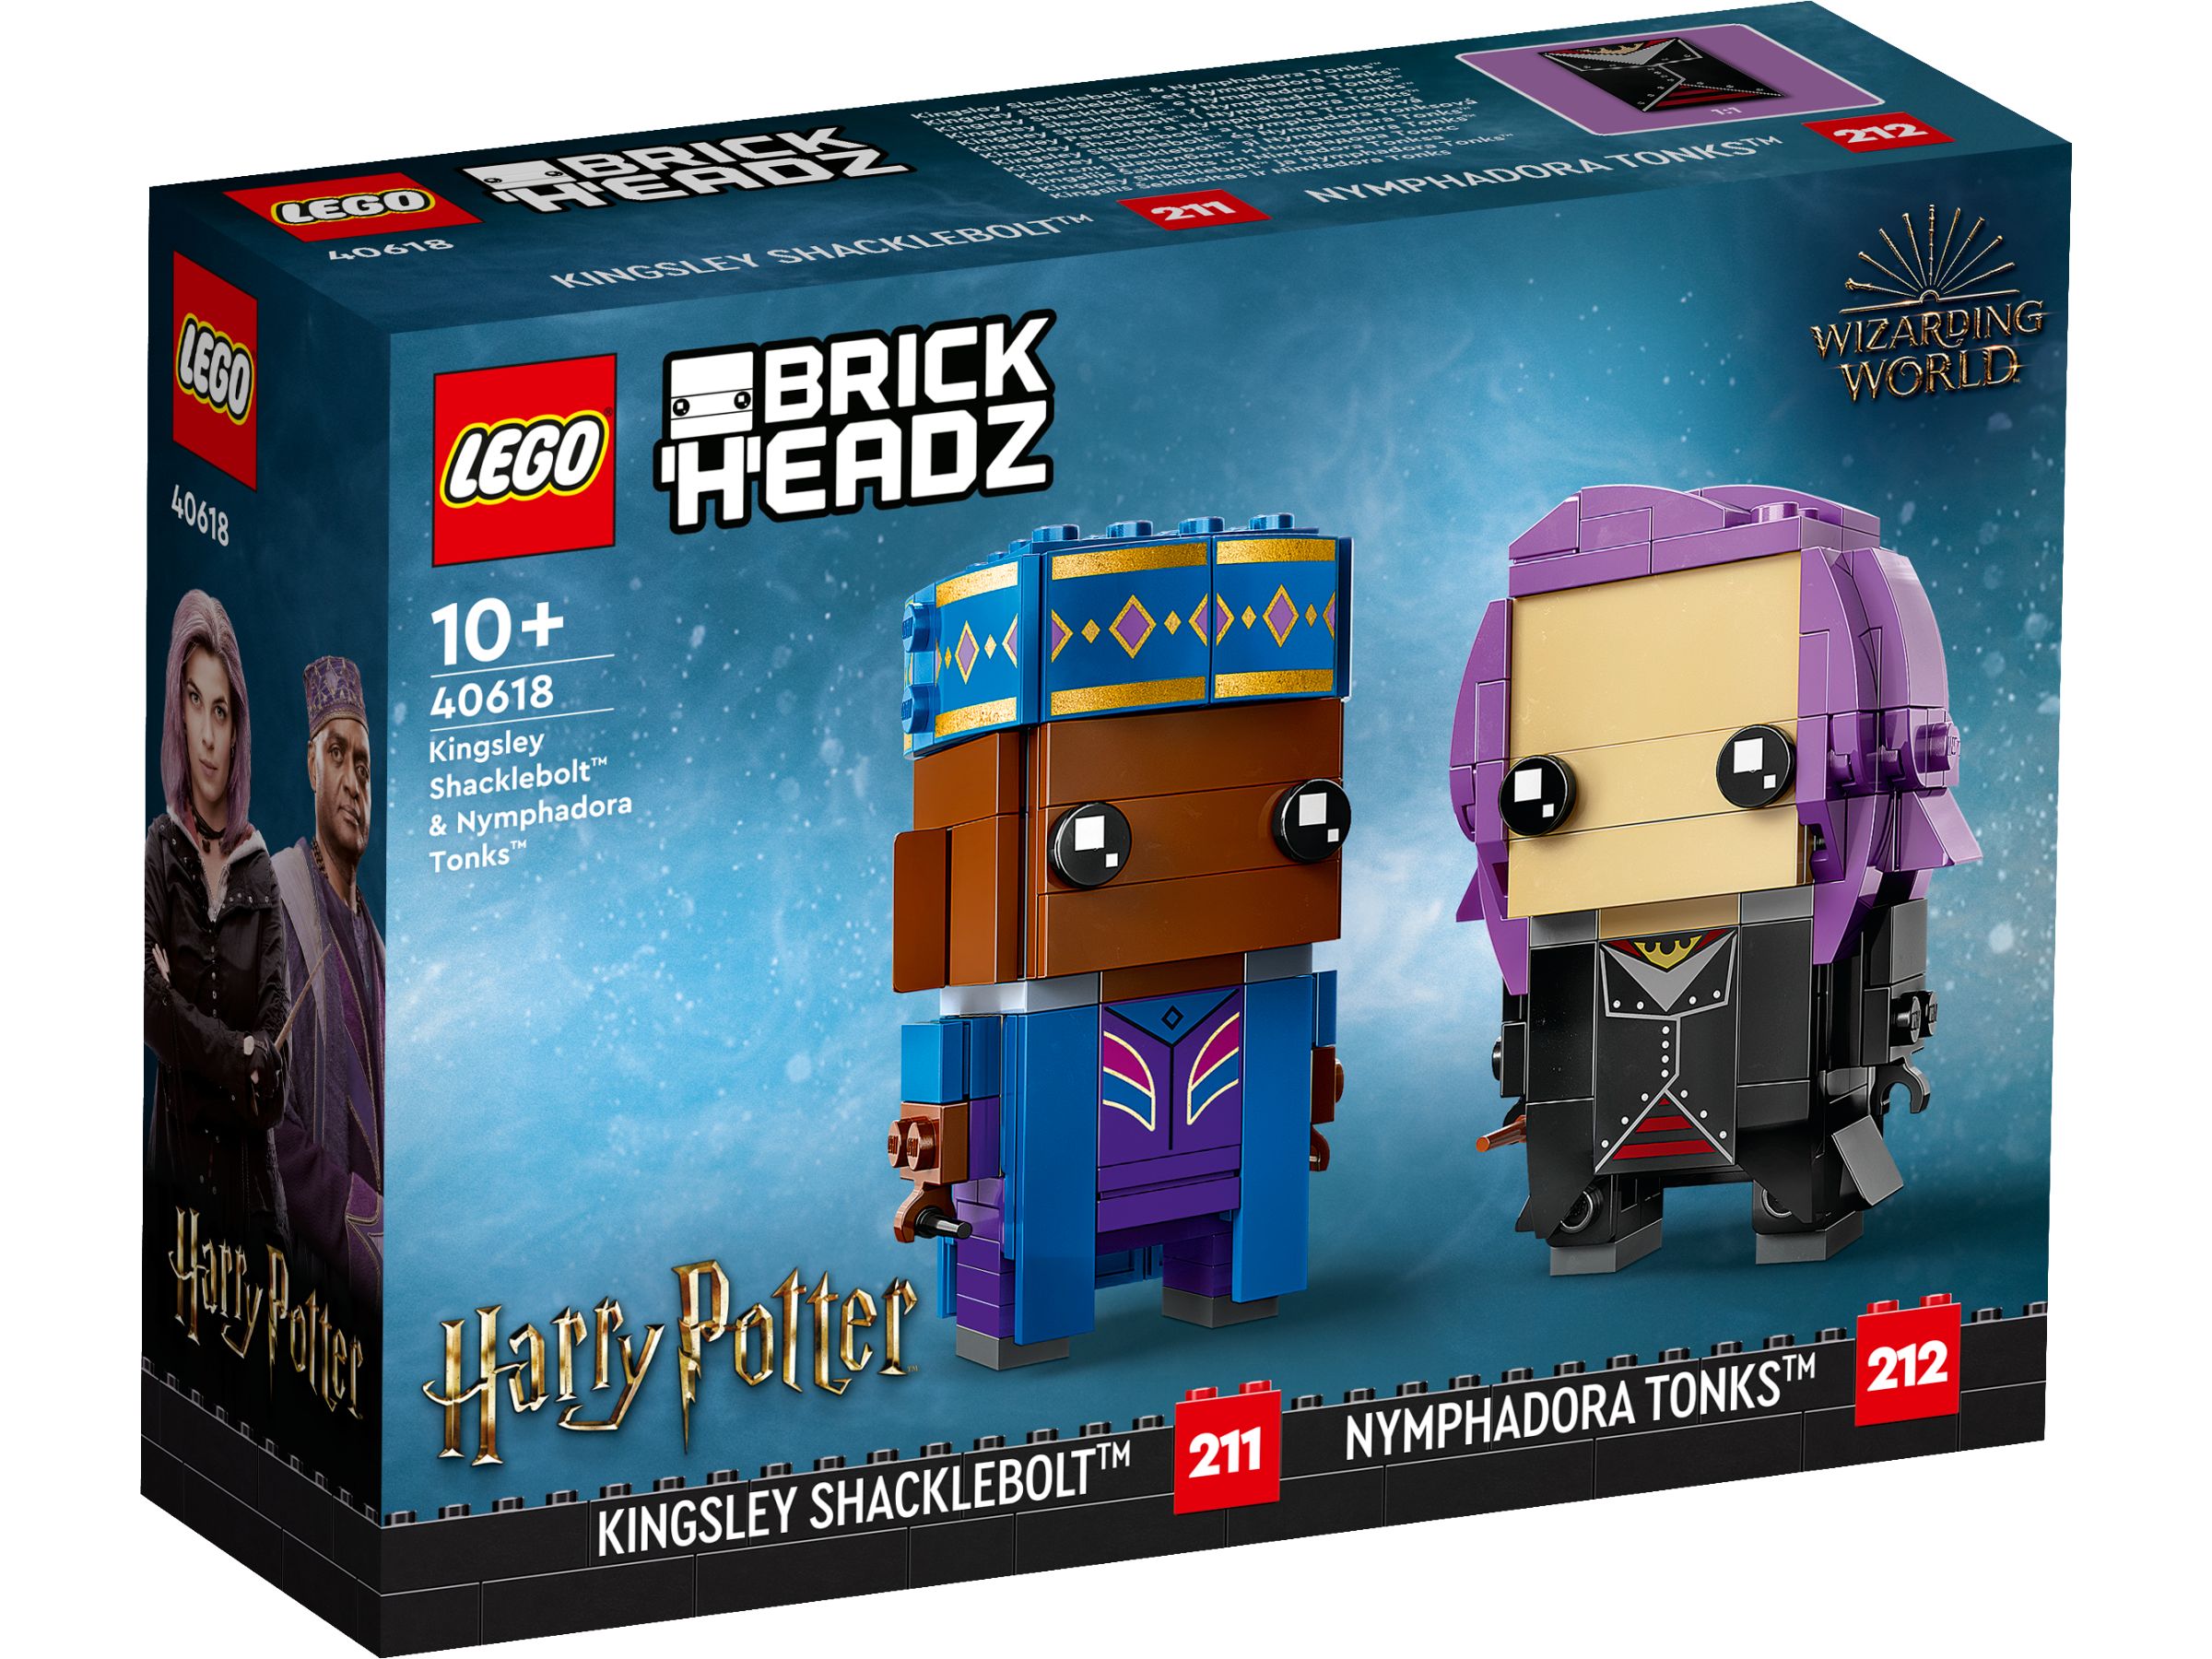 LEGO BrickHeadz 40618 Kingsley Shacklebolt™ & Nymphadora Tonks™ LEGO_40618_Box1_v29.jpg